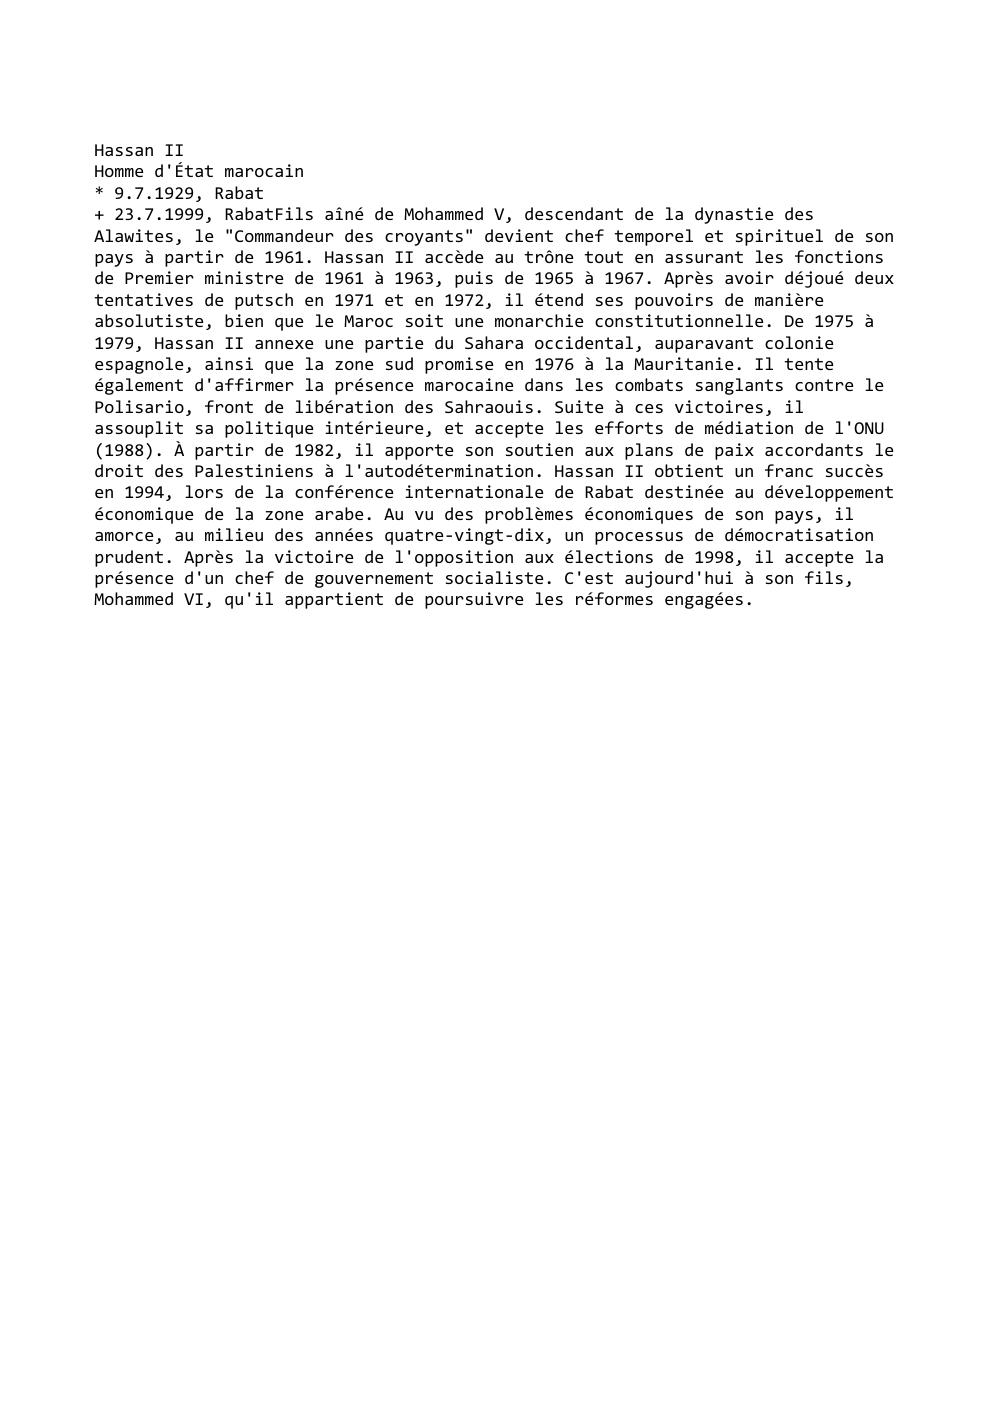 Prévisualisation du document Hassan II
Homme d'État marocain
* 9.7.1929, Rabat
+ 23.7.1999, RabatFils aîné de Mohammed V, descendant de la dynastie des...